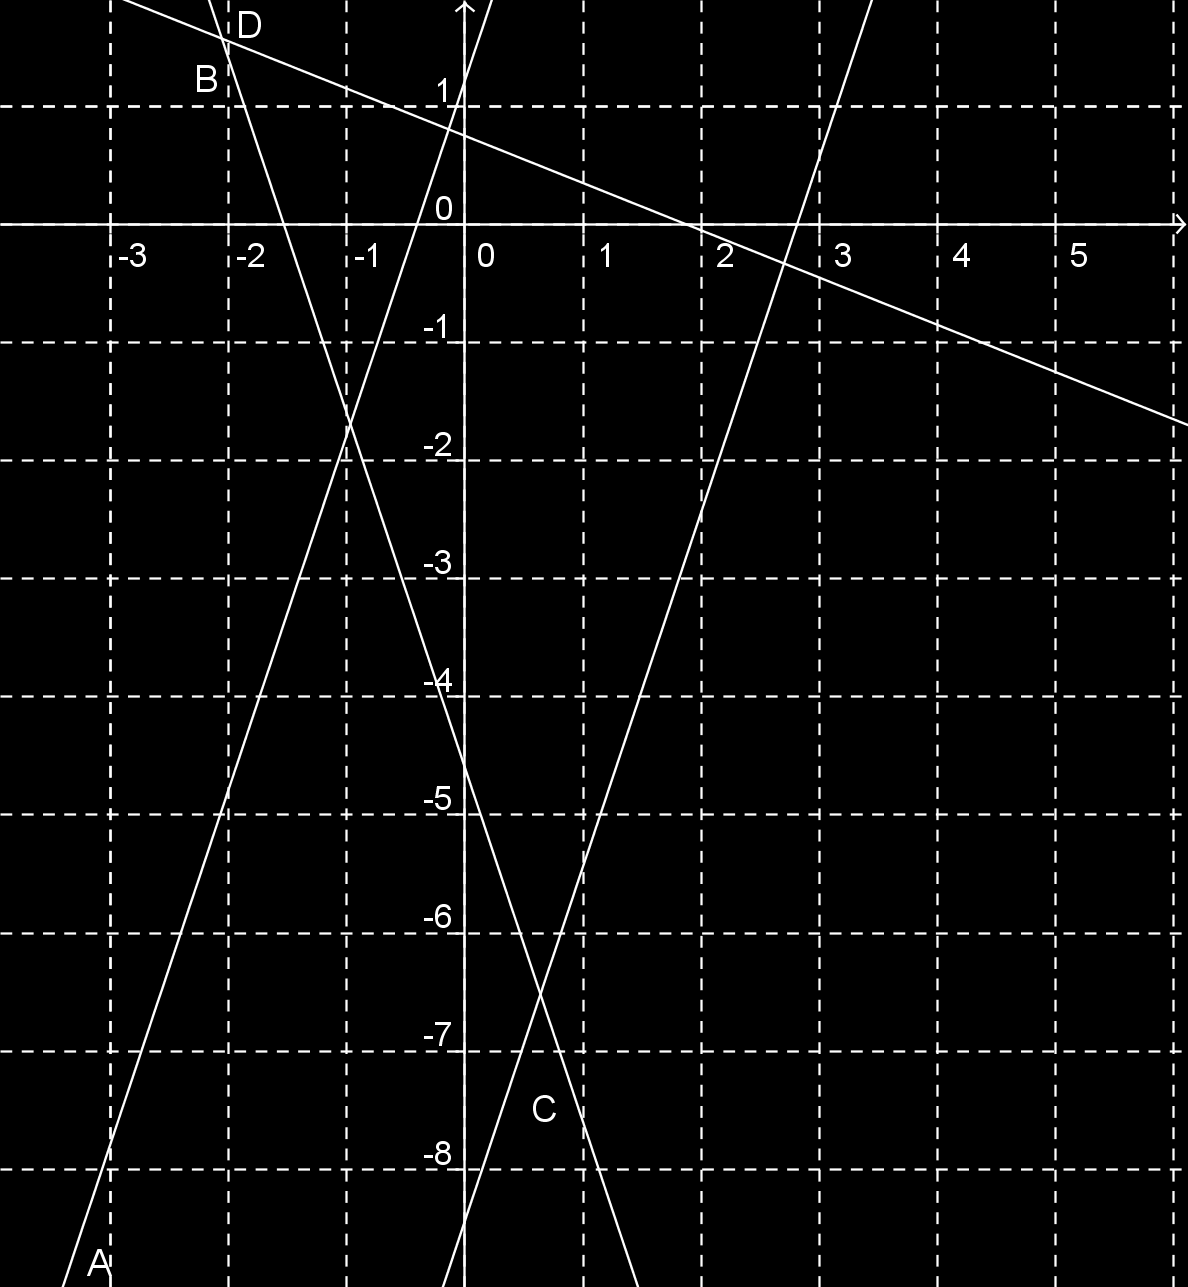 MINTATESZTEK 133 13 feladat: Határozzuk meg, hogy az ábrán látható függvények közül melyik az f(x) = 2 5 x + 3 4 függvény grakonja. (Karikázza be.)(lásd a 4. ábra)